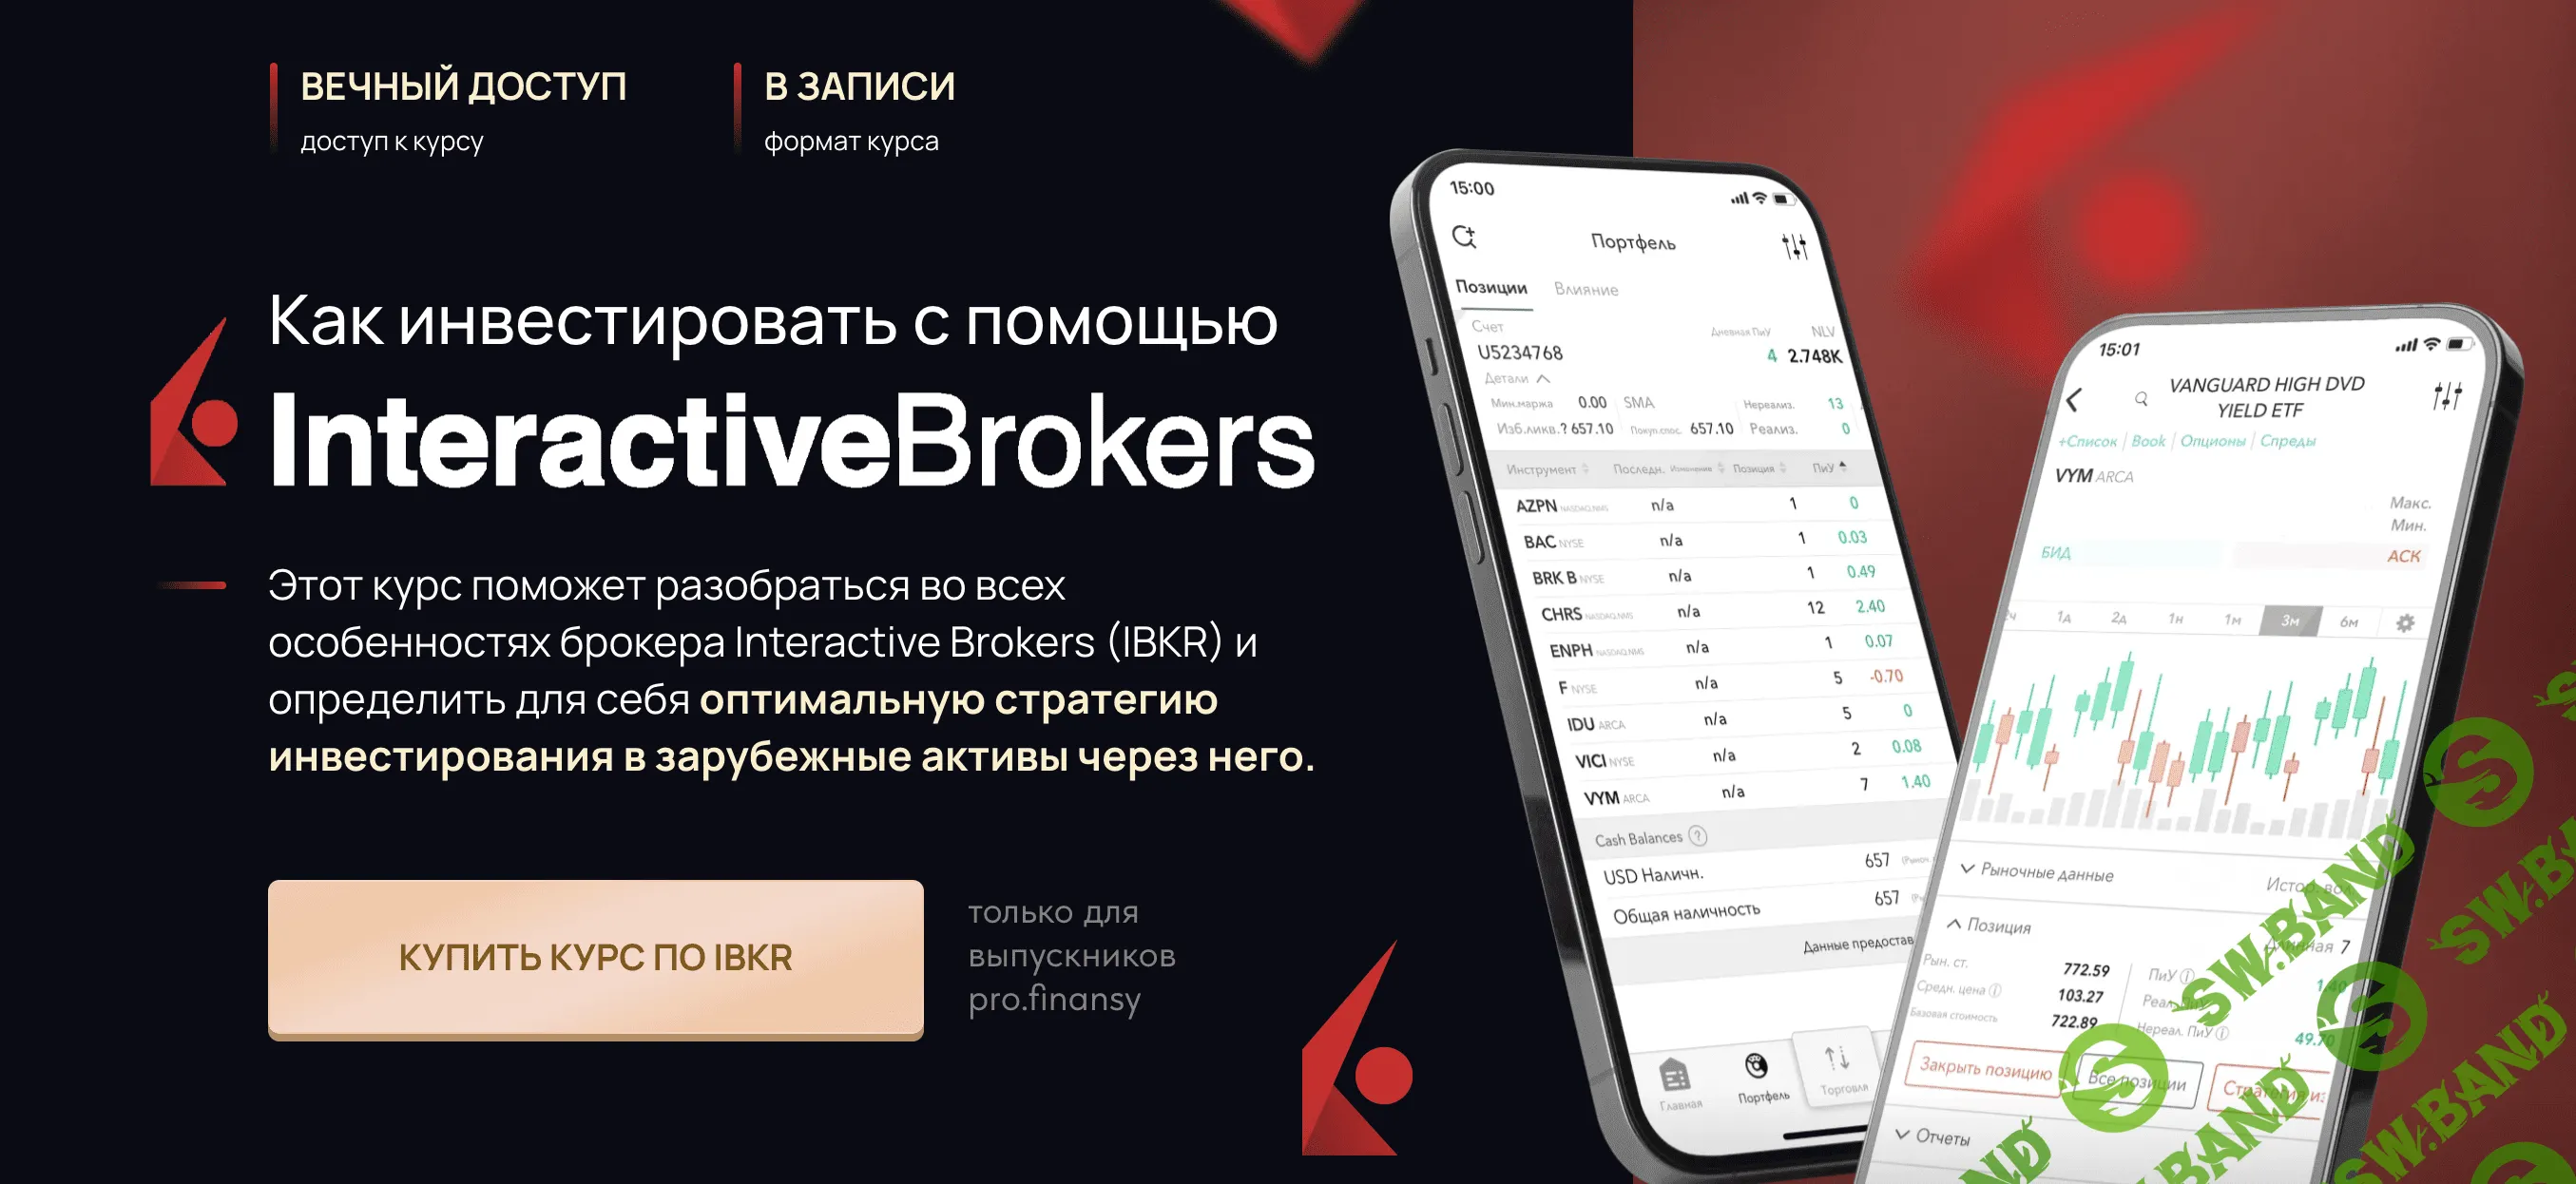 Как инвестировать с помощью Interactive Brokers [Ольга Гогаладзе]